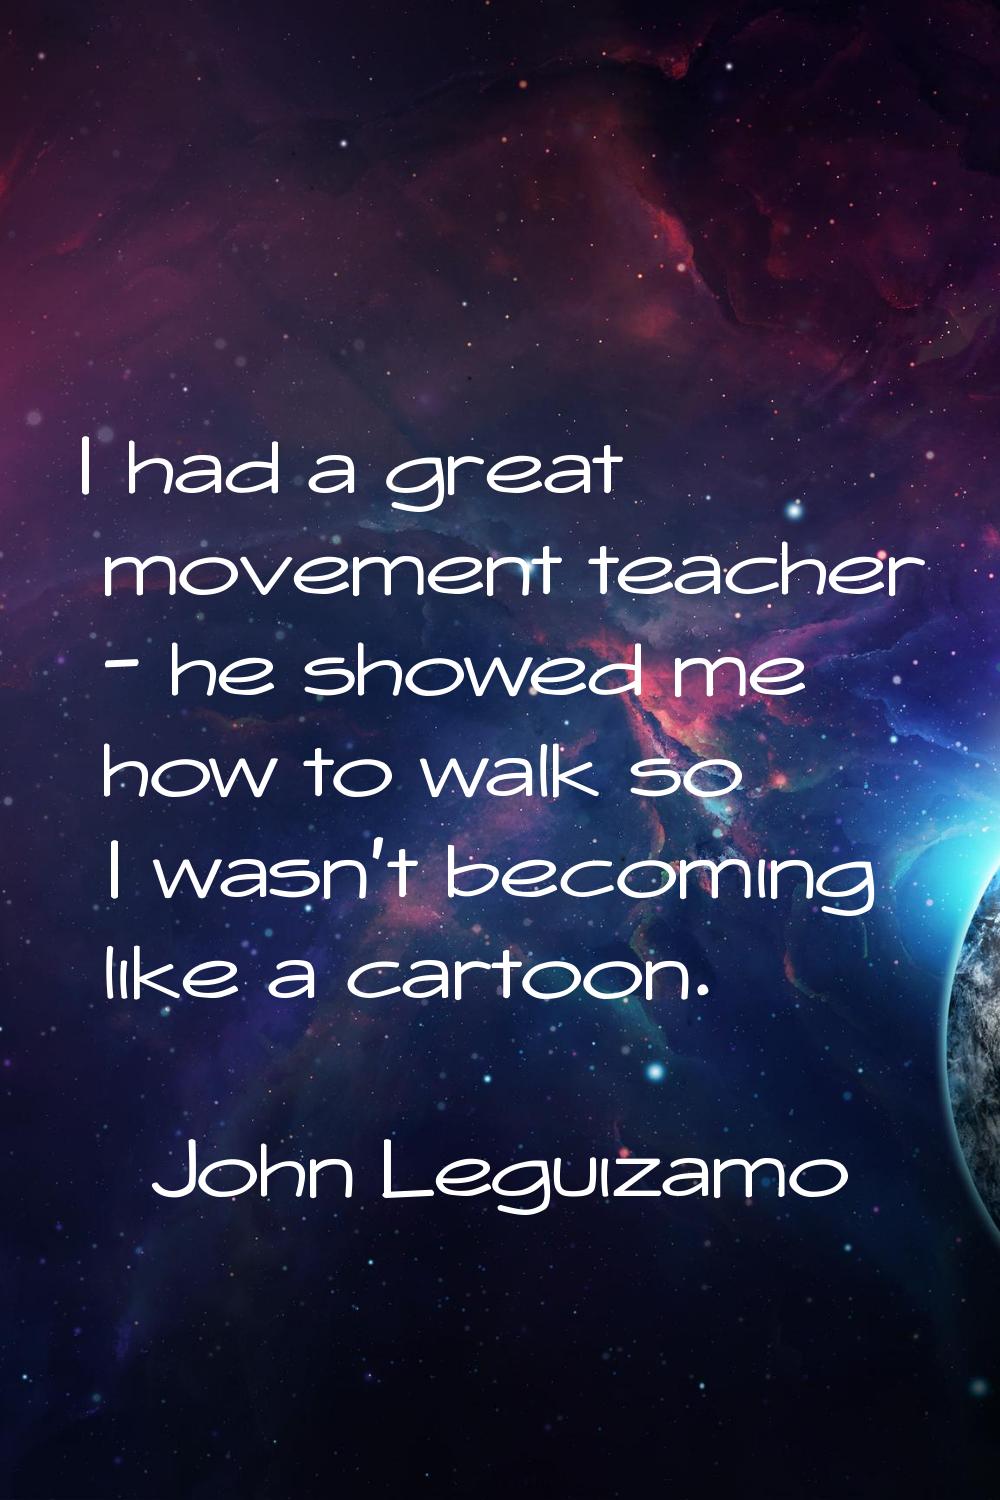 I had a great movement teacher - he showed me how to walk so I wasn't becoming like a cartoon.